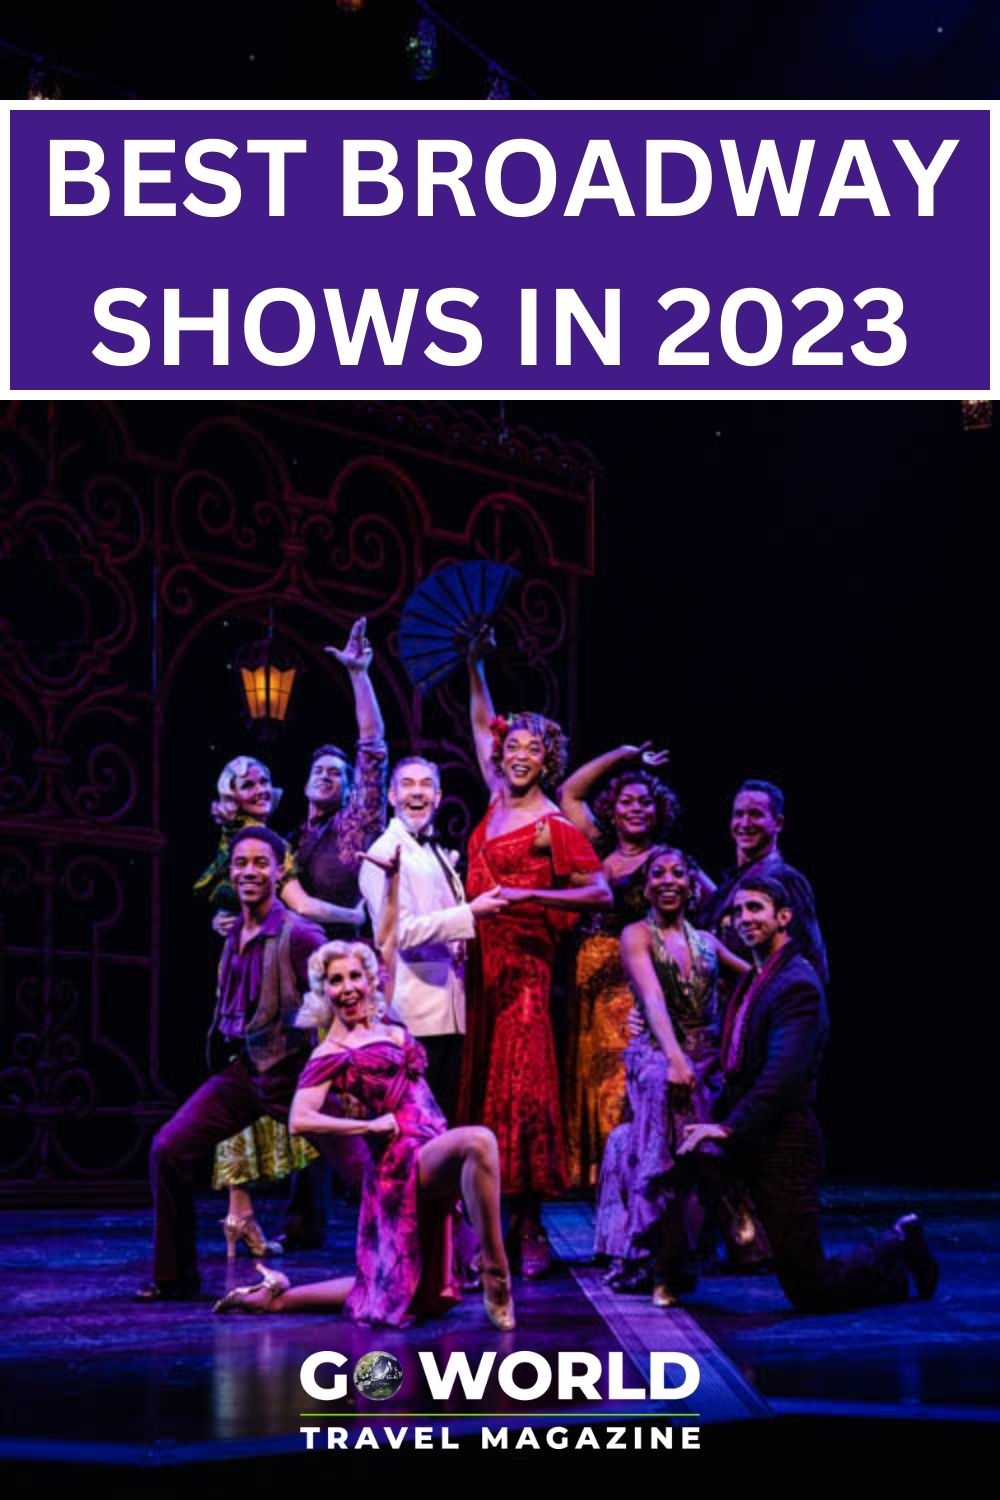  إذا كنت تخطط لرحلة إلى مدينة نيويورك ، فهذا عام ، سترغب في مشاهدة عرض. إليك قائمة بأفضل عروض برودواي لعام 2023. #NYC #Broadwayshows 